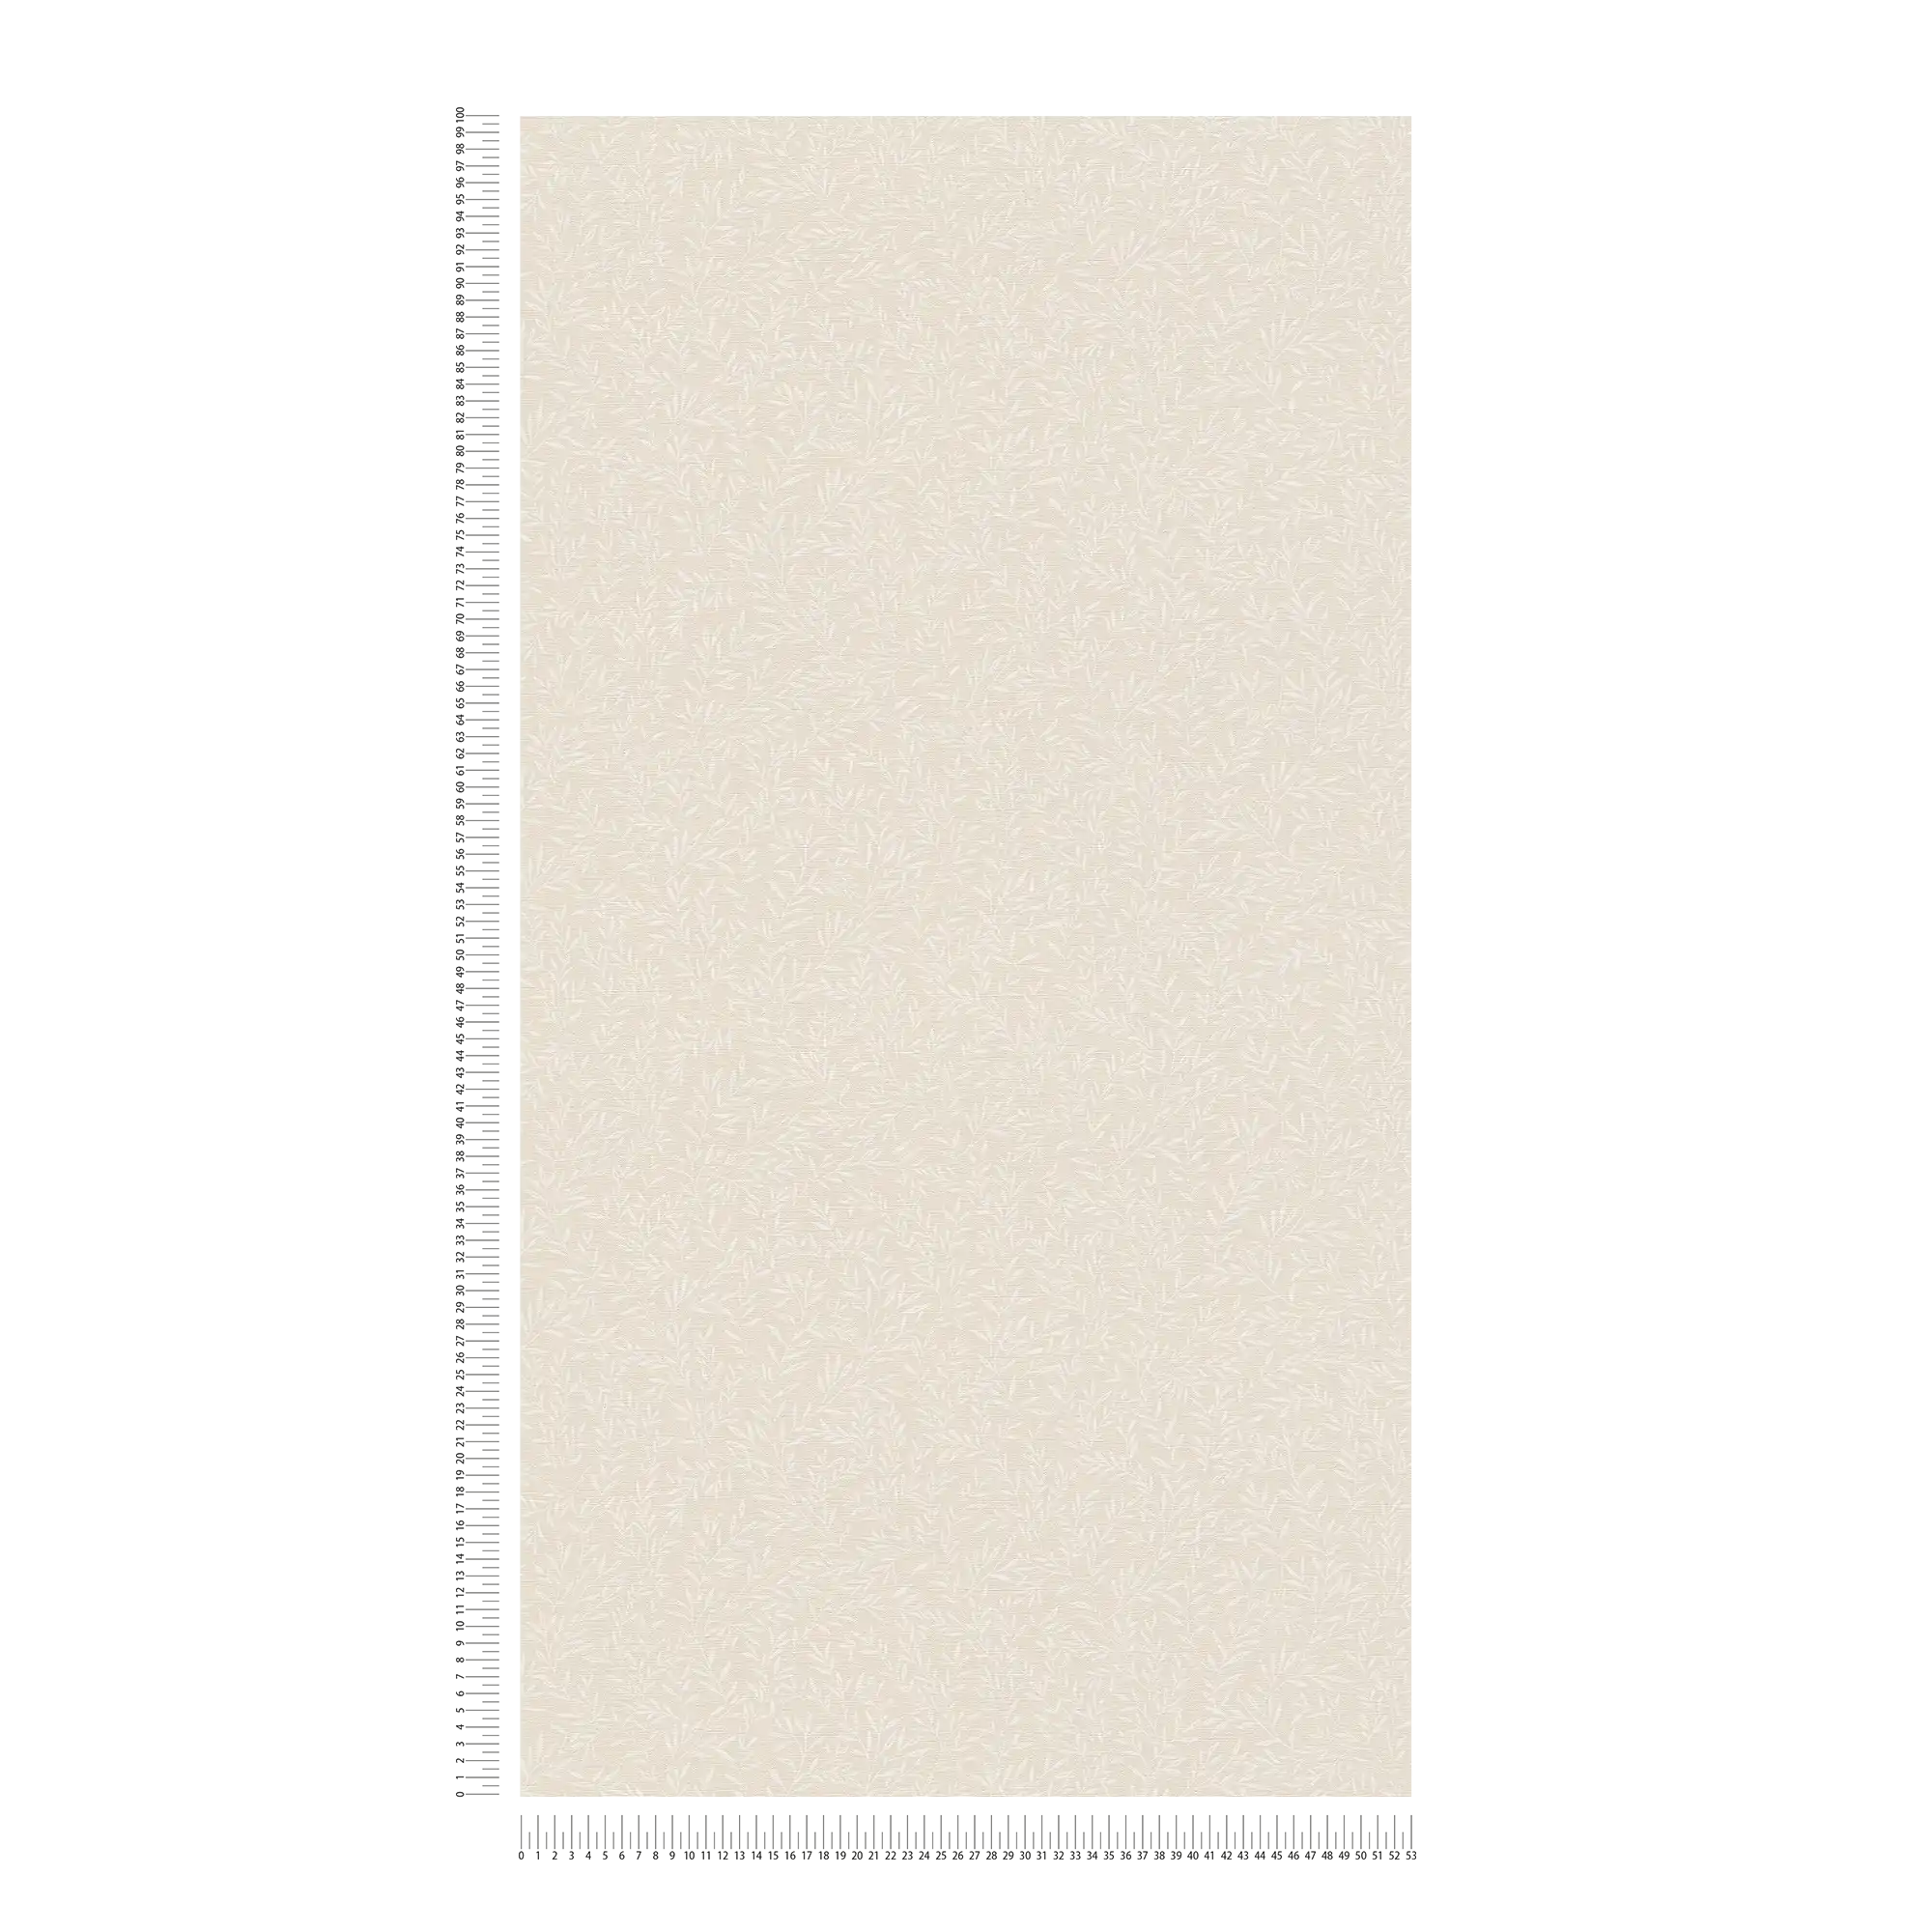             Landhuisbehang met rankenpatroon - beige, wit
        